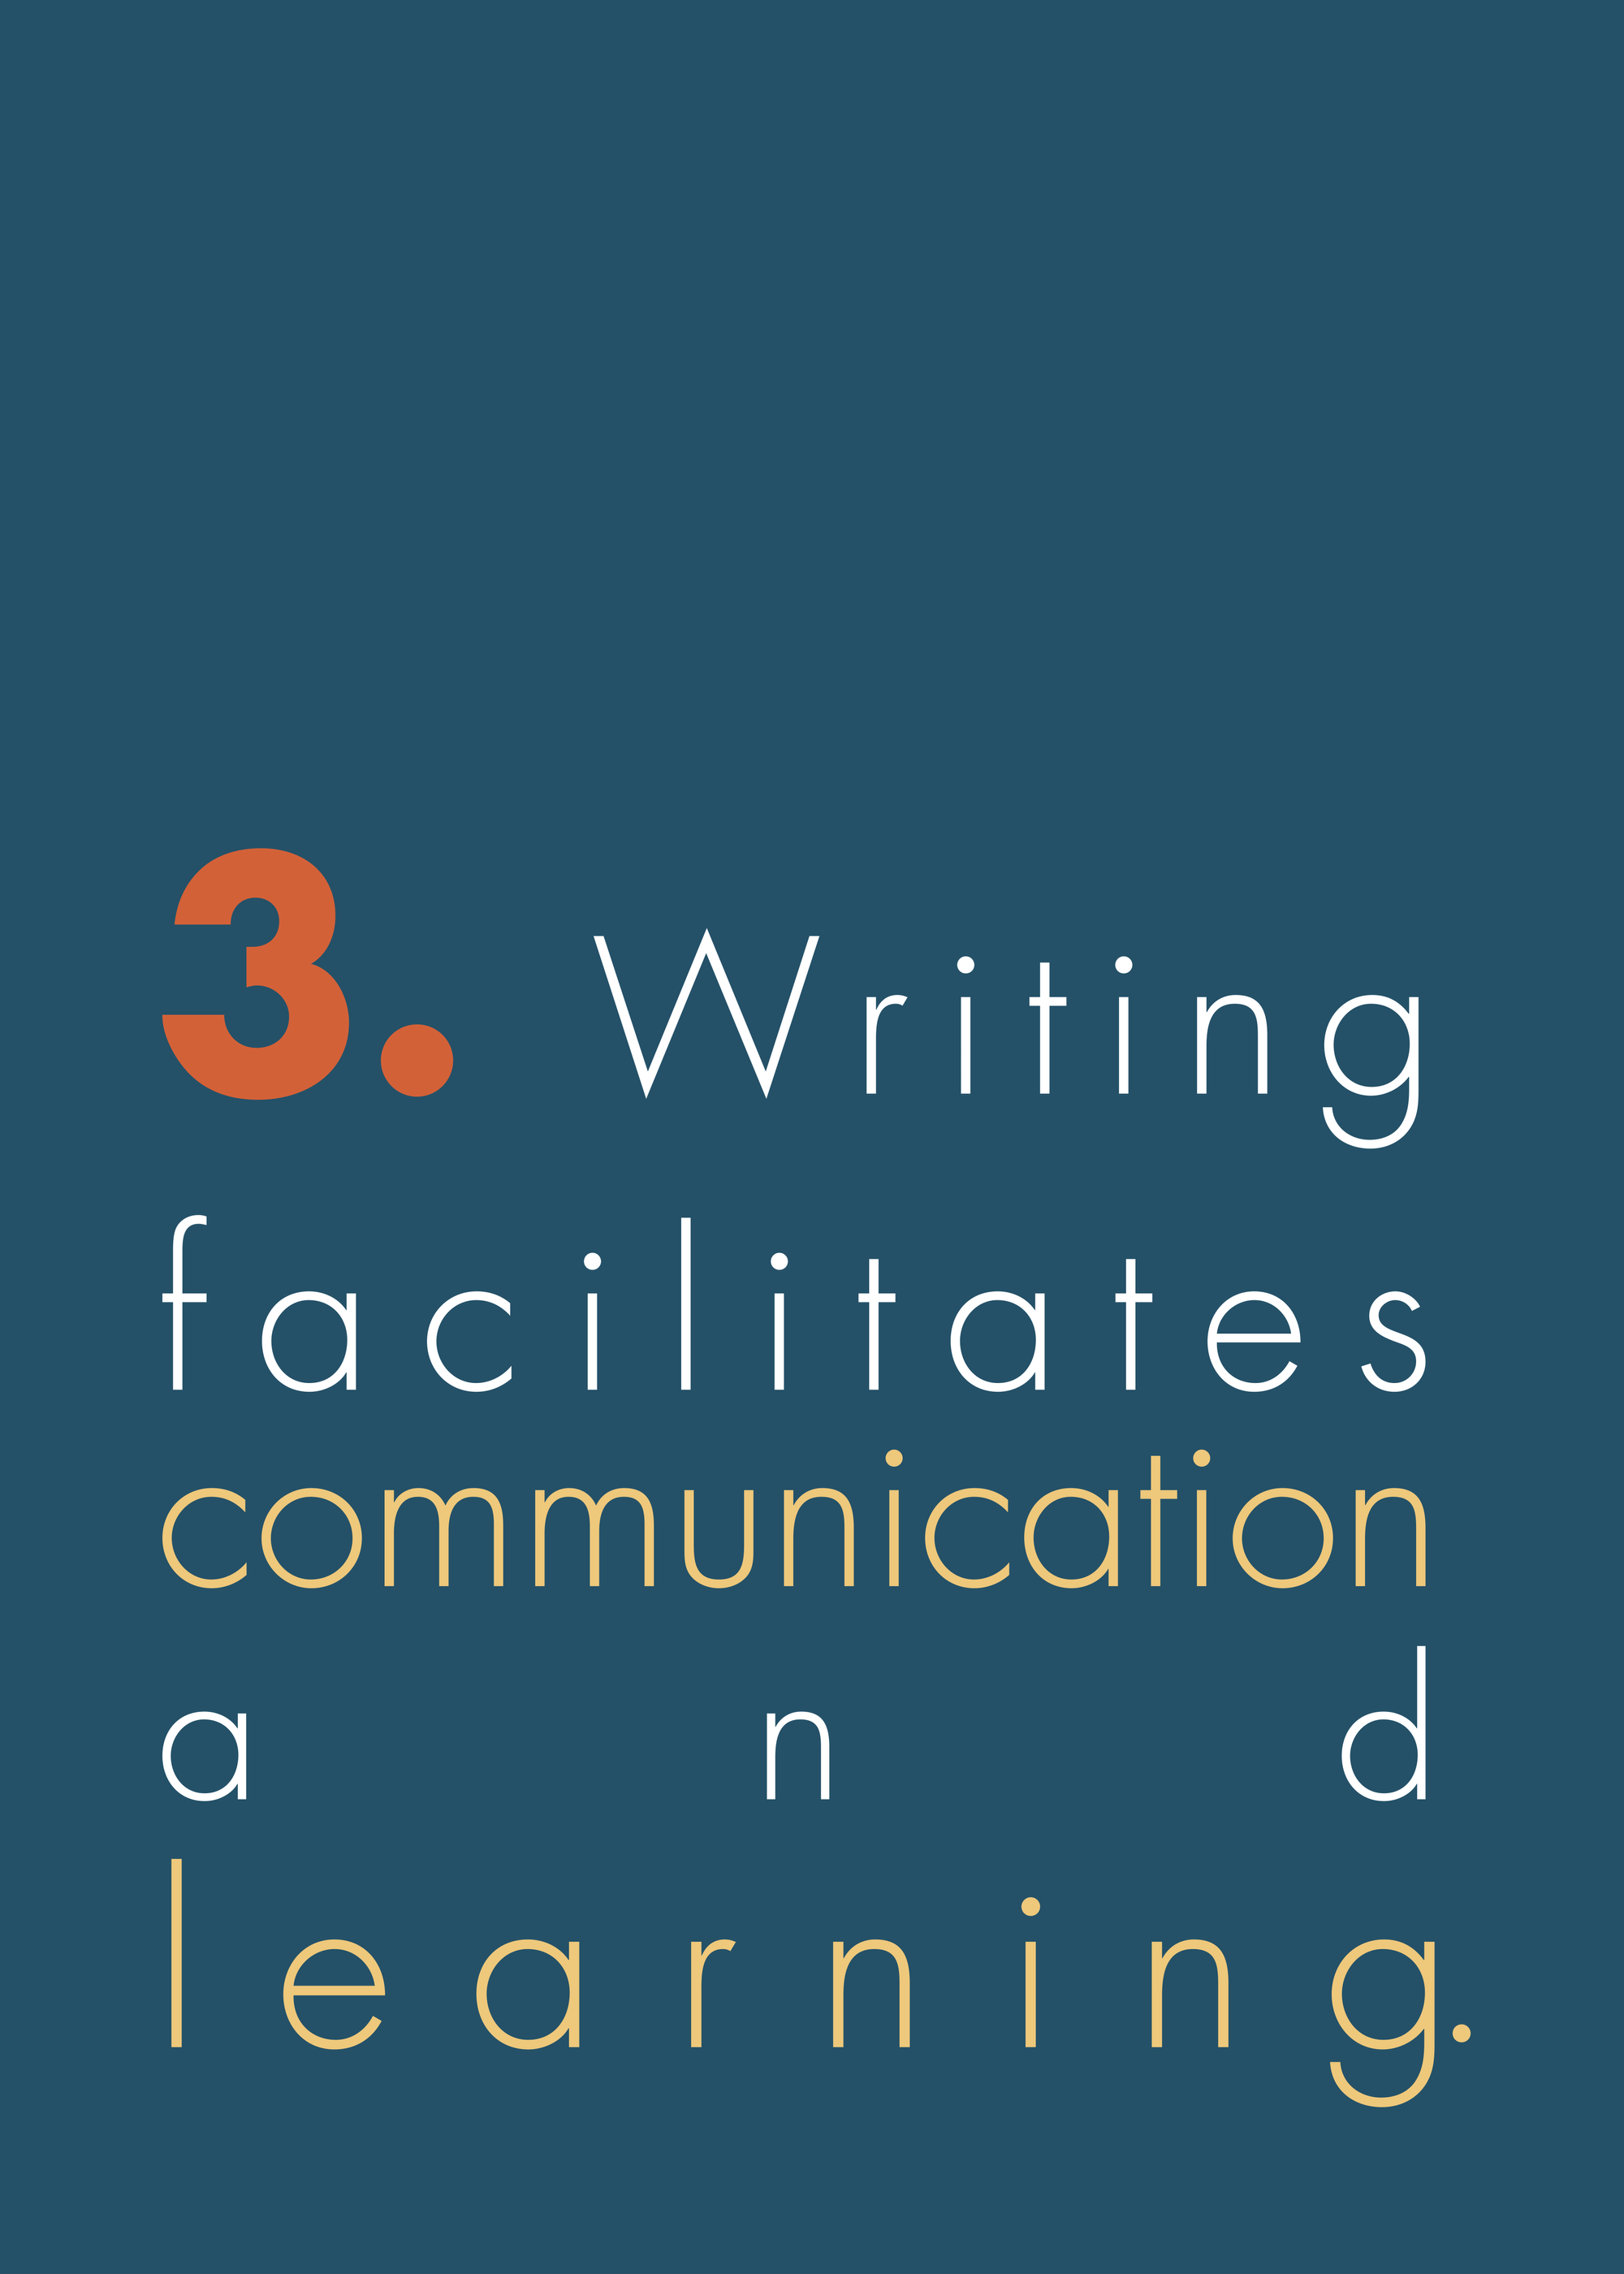 3. Writing facilitates communication & learning